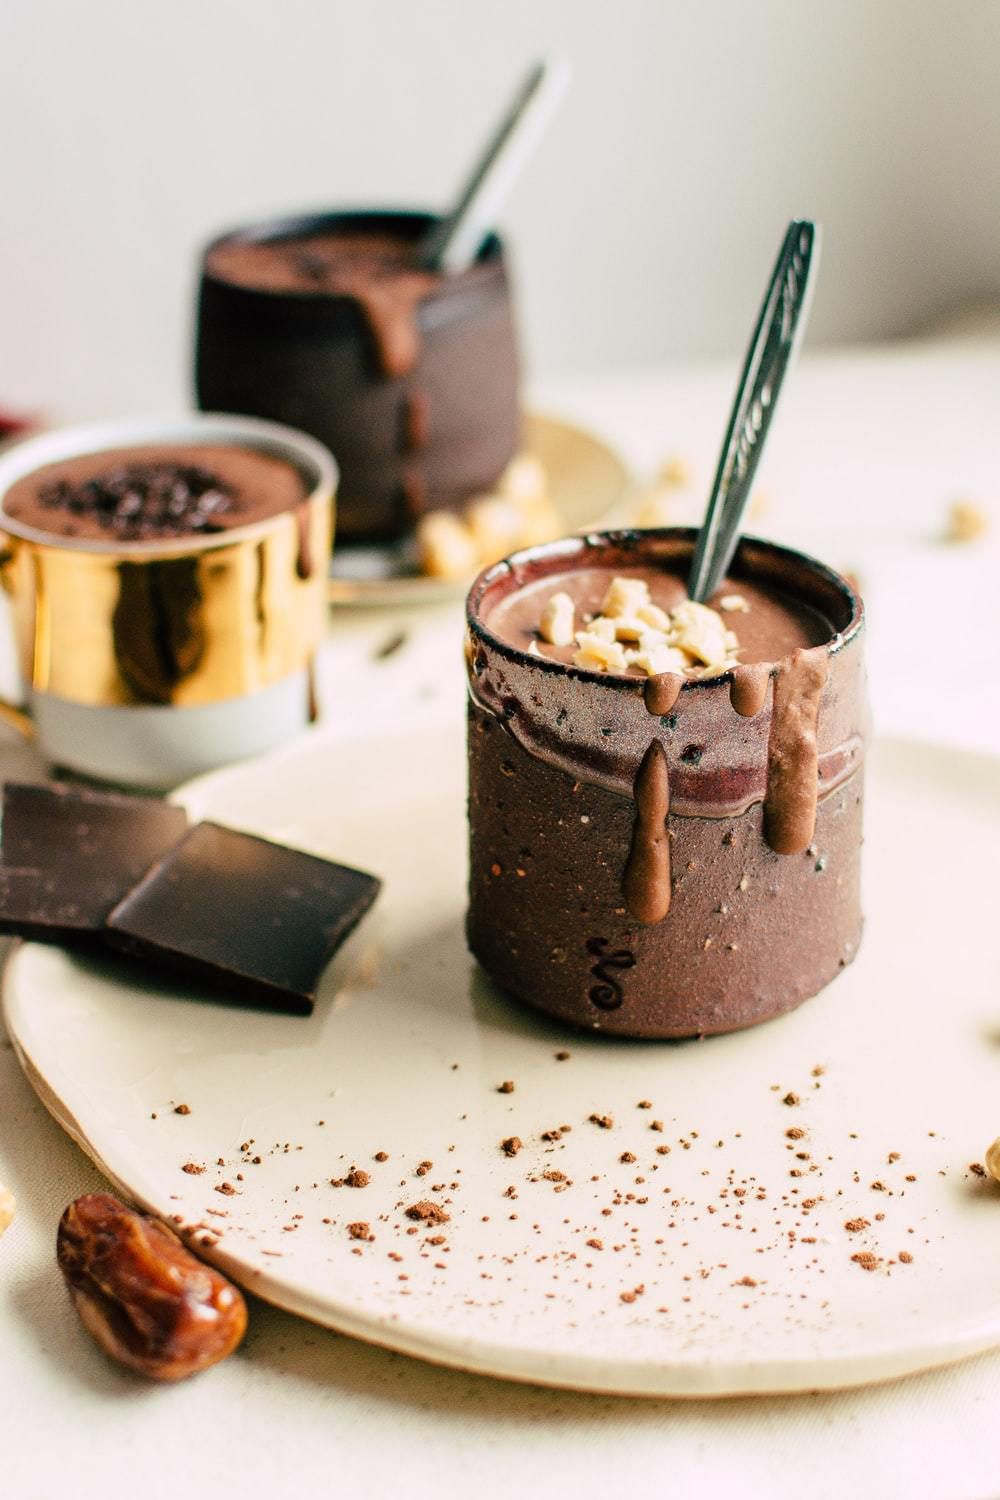 Гарячий шоколад із корицею для холодних вечорів. Можна додати до нього збиті вершки, кульку морозива або зефірні цукерки маршмелоу.